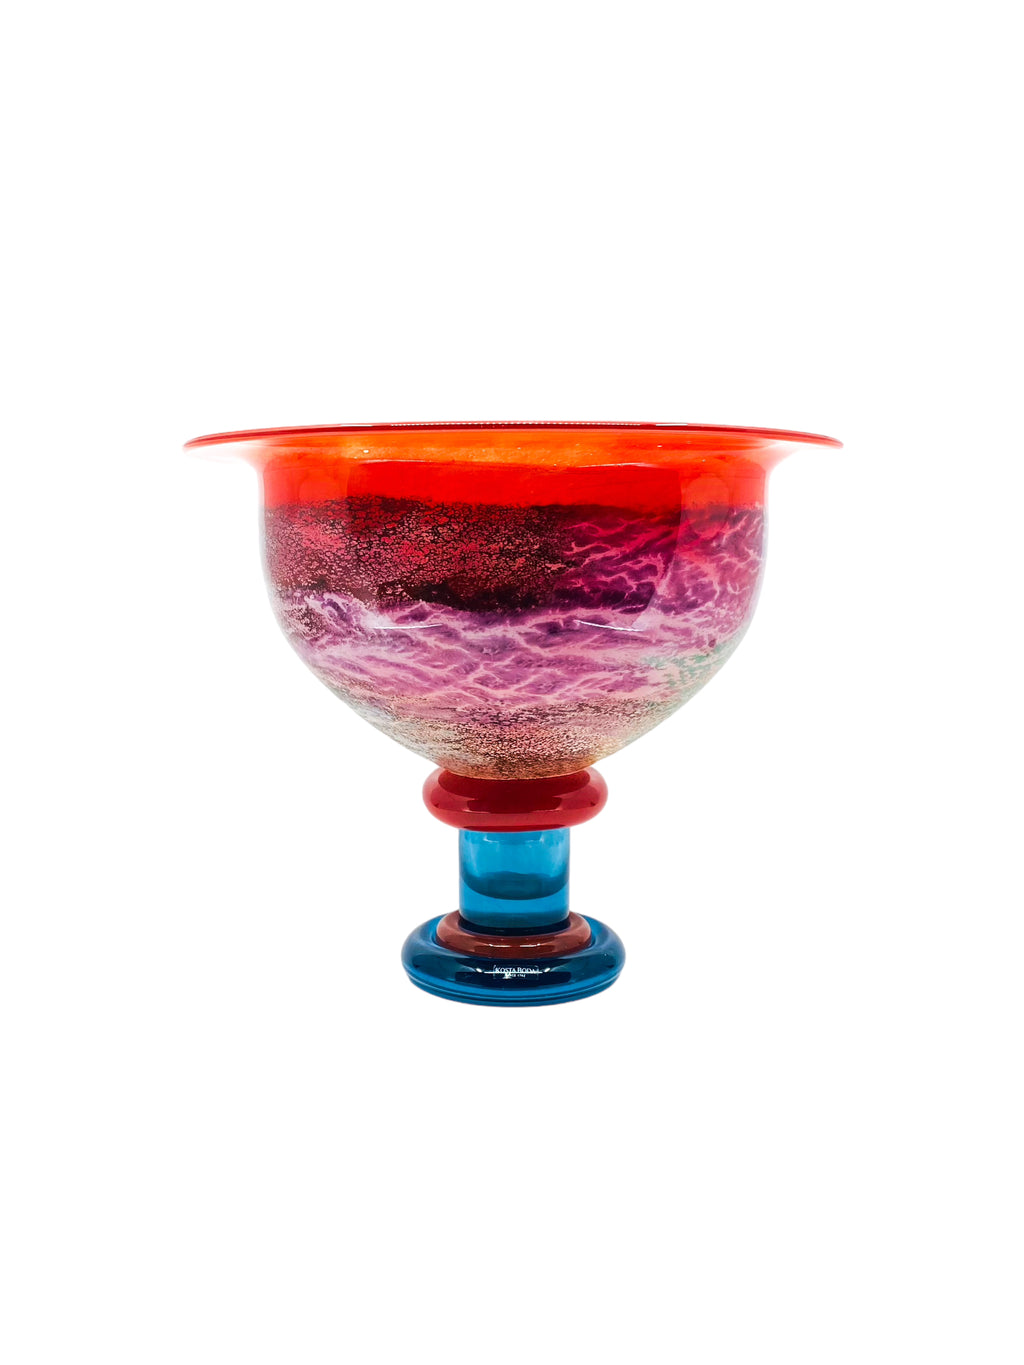 1991 Kosta Boda Large Art Glass Bowl ‘CanCan’ by Kjell Engman